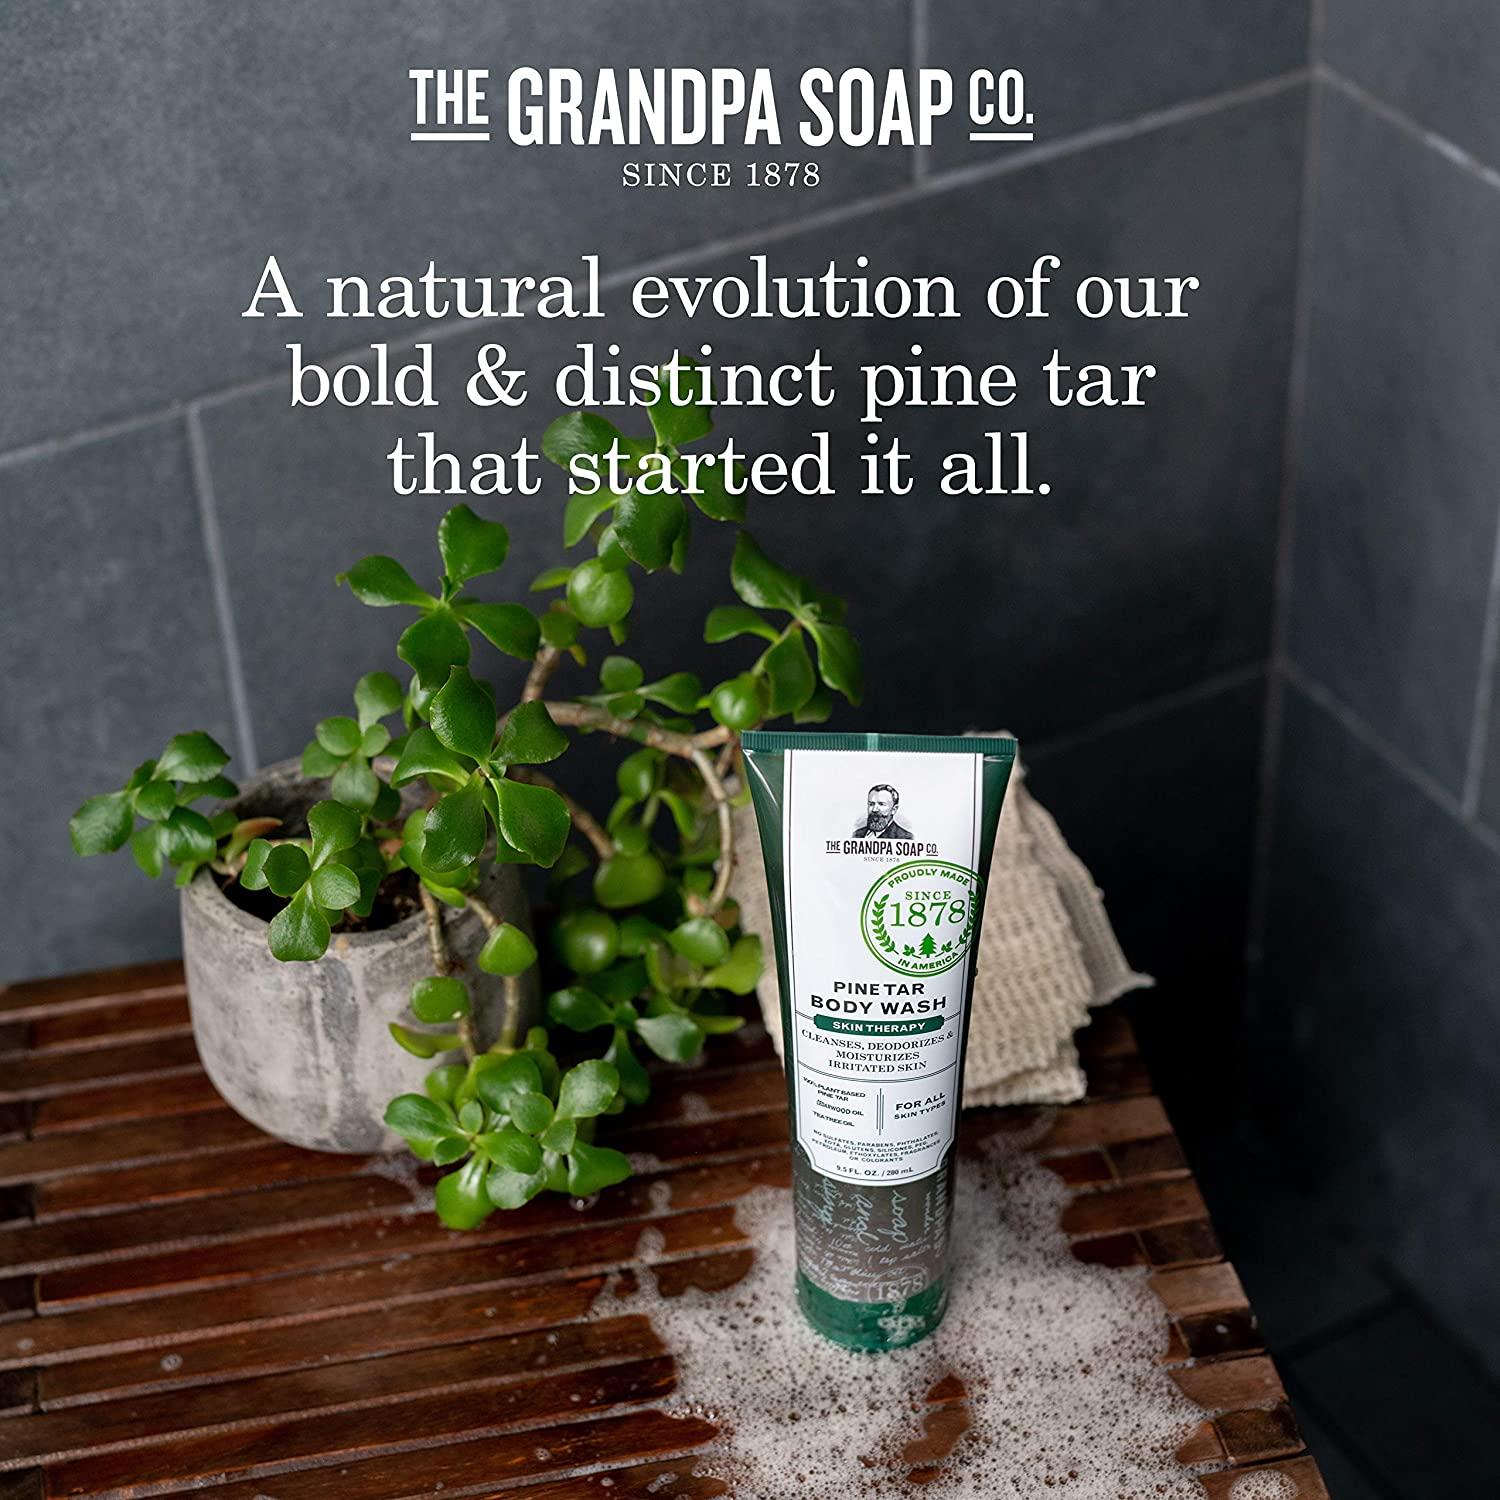 The Grandpa Soap Co. Pine Tar Body Wash by The Grandpa Soap